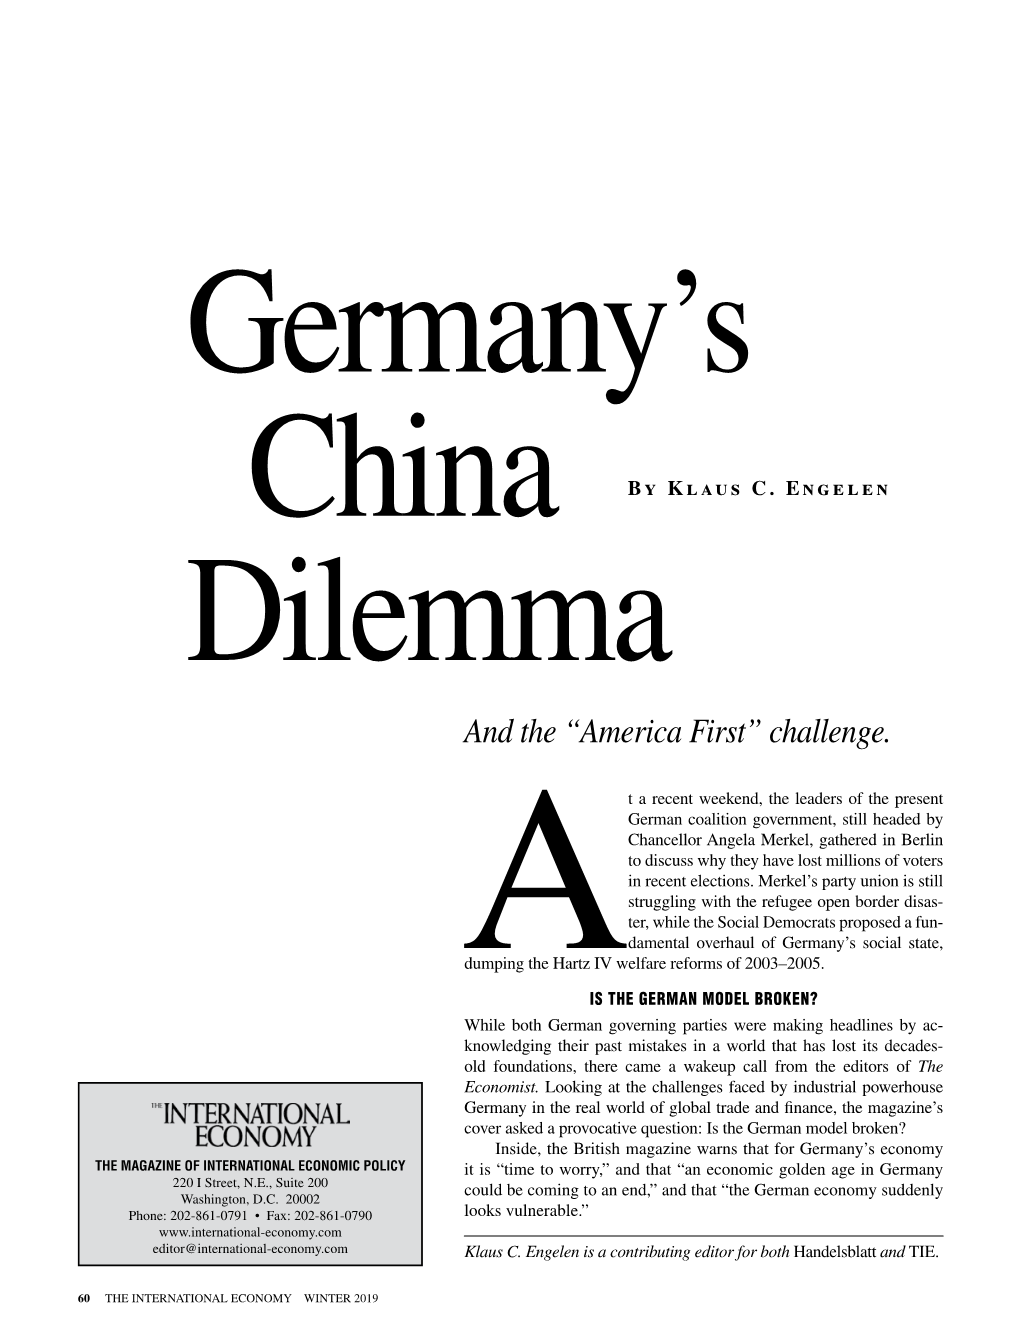 Germany's China Dilemma